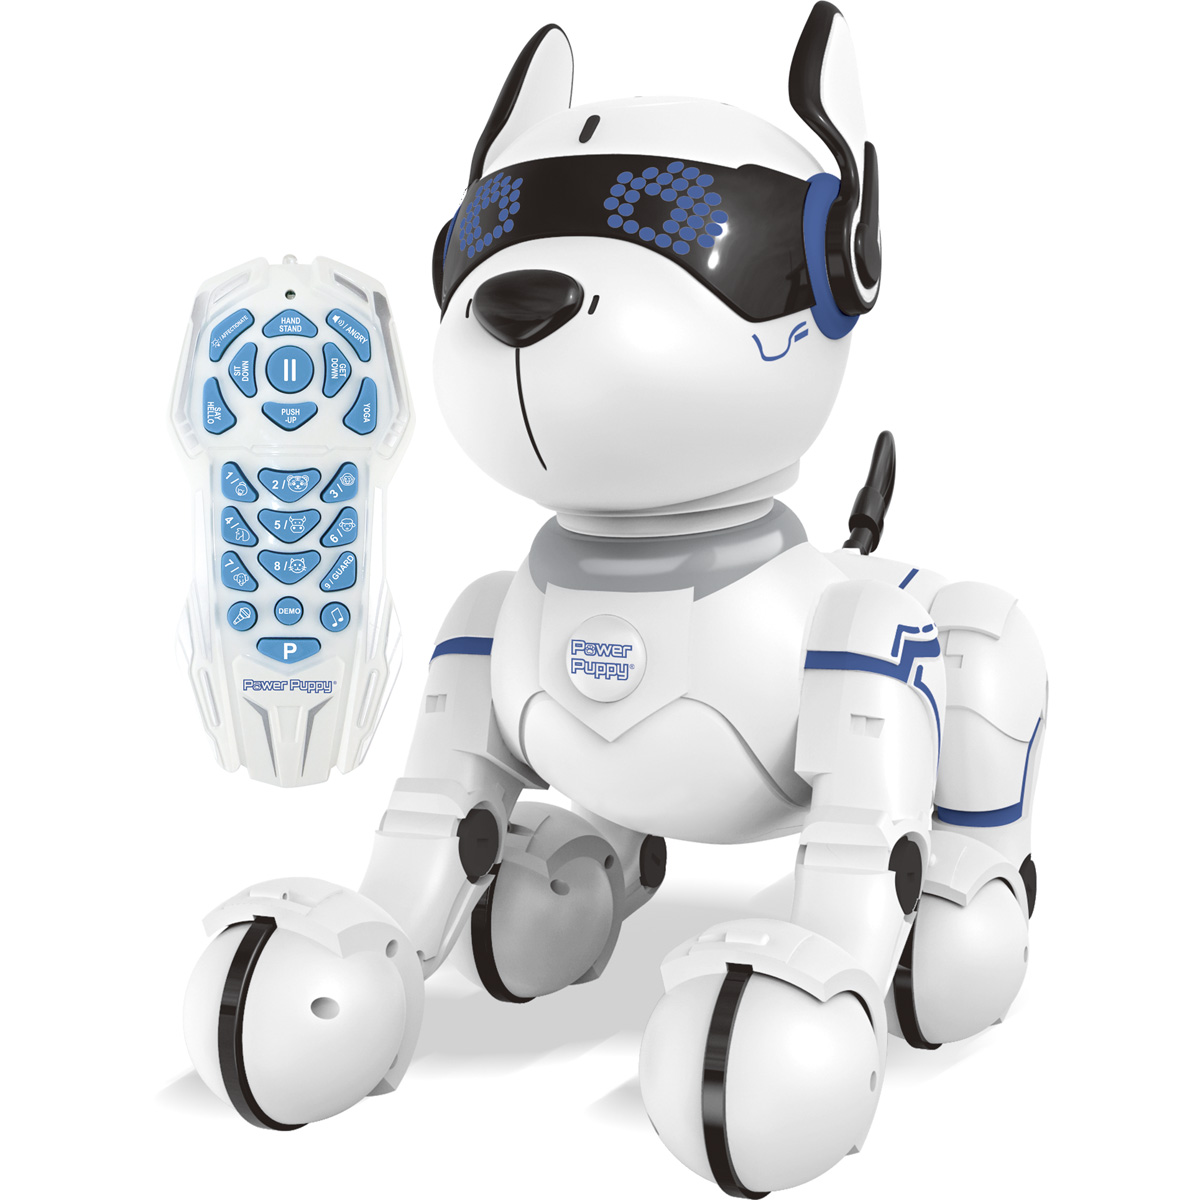 LEXIBOOK POWER PUPPY Programmierbarer Roboterhund Lernroboter, Schwarz/Weiß